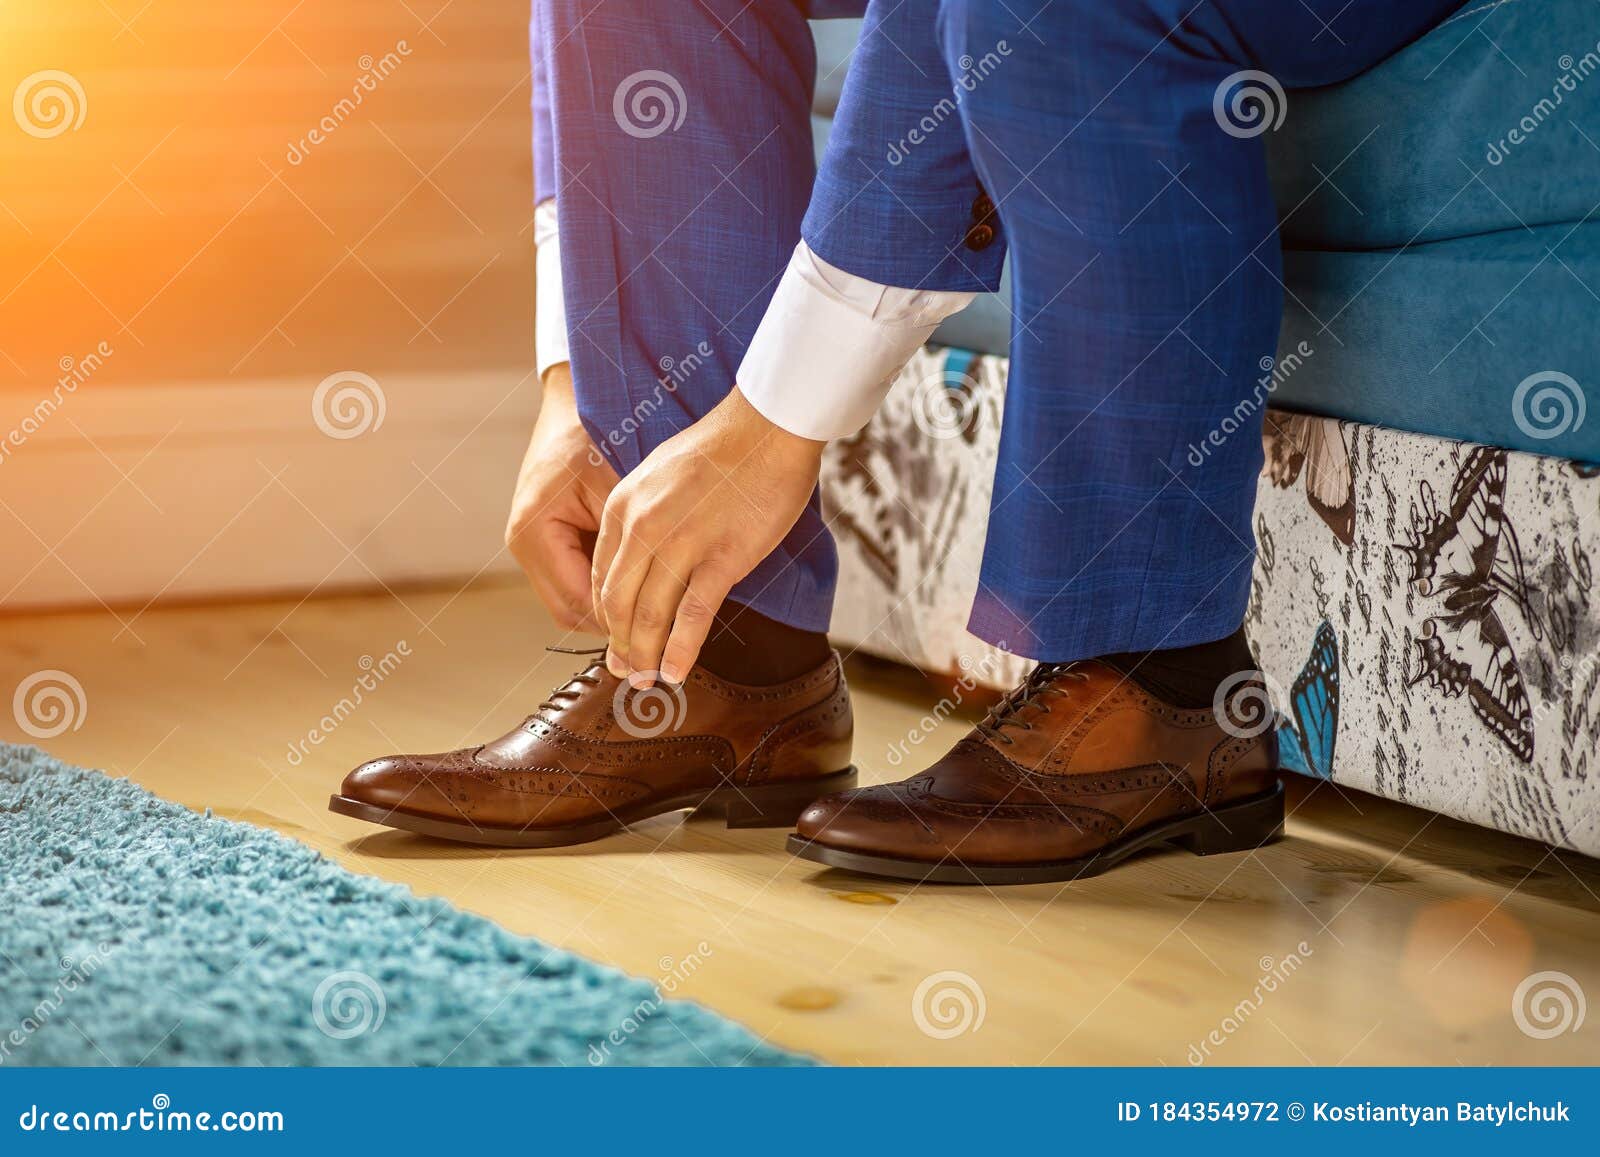 Un Hombre Ata Sus Cordones En Sus Zapatos Marrones En La Habitación. Traje Azul Y Zapatos De Charol Foto de archivo - de azul, detalle: 184354972